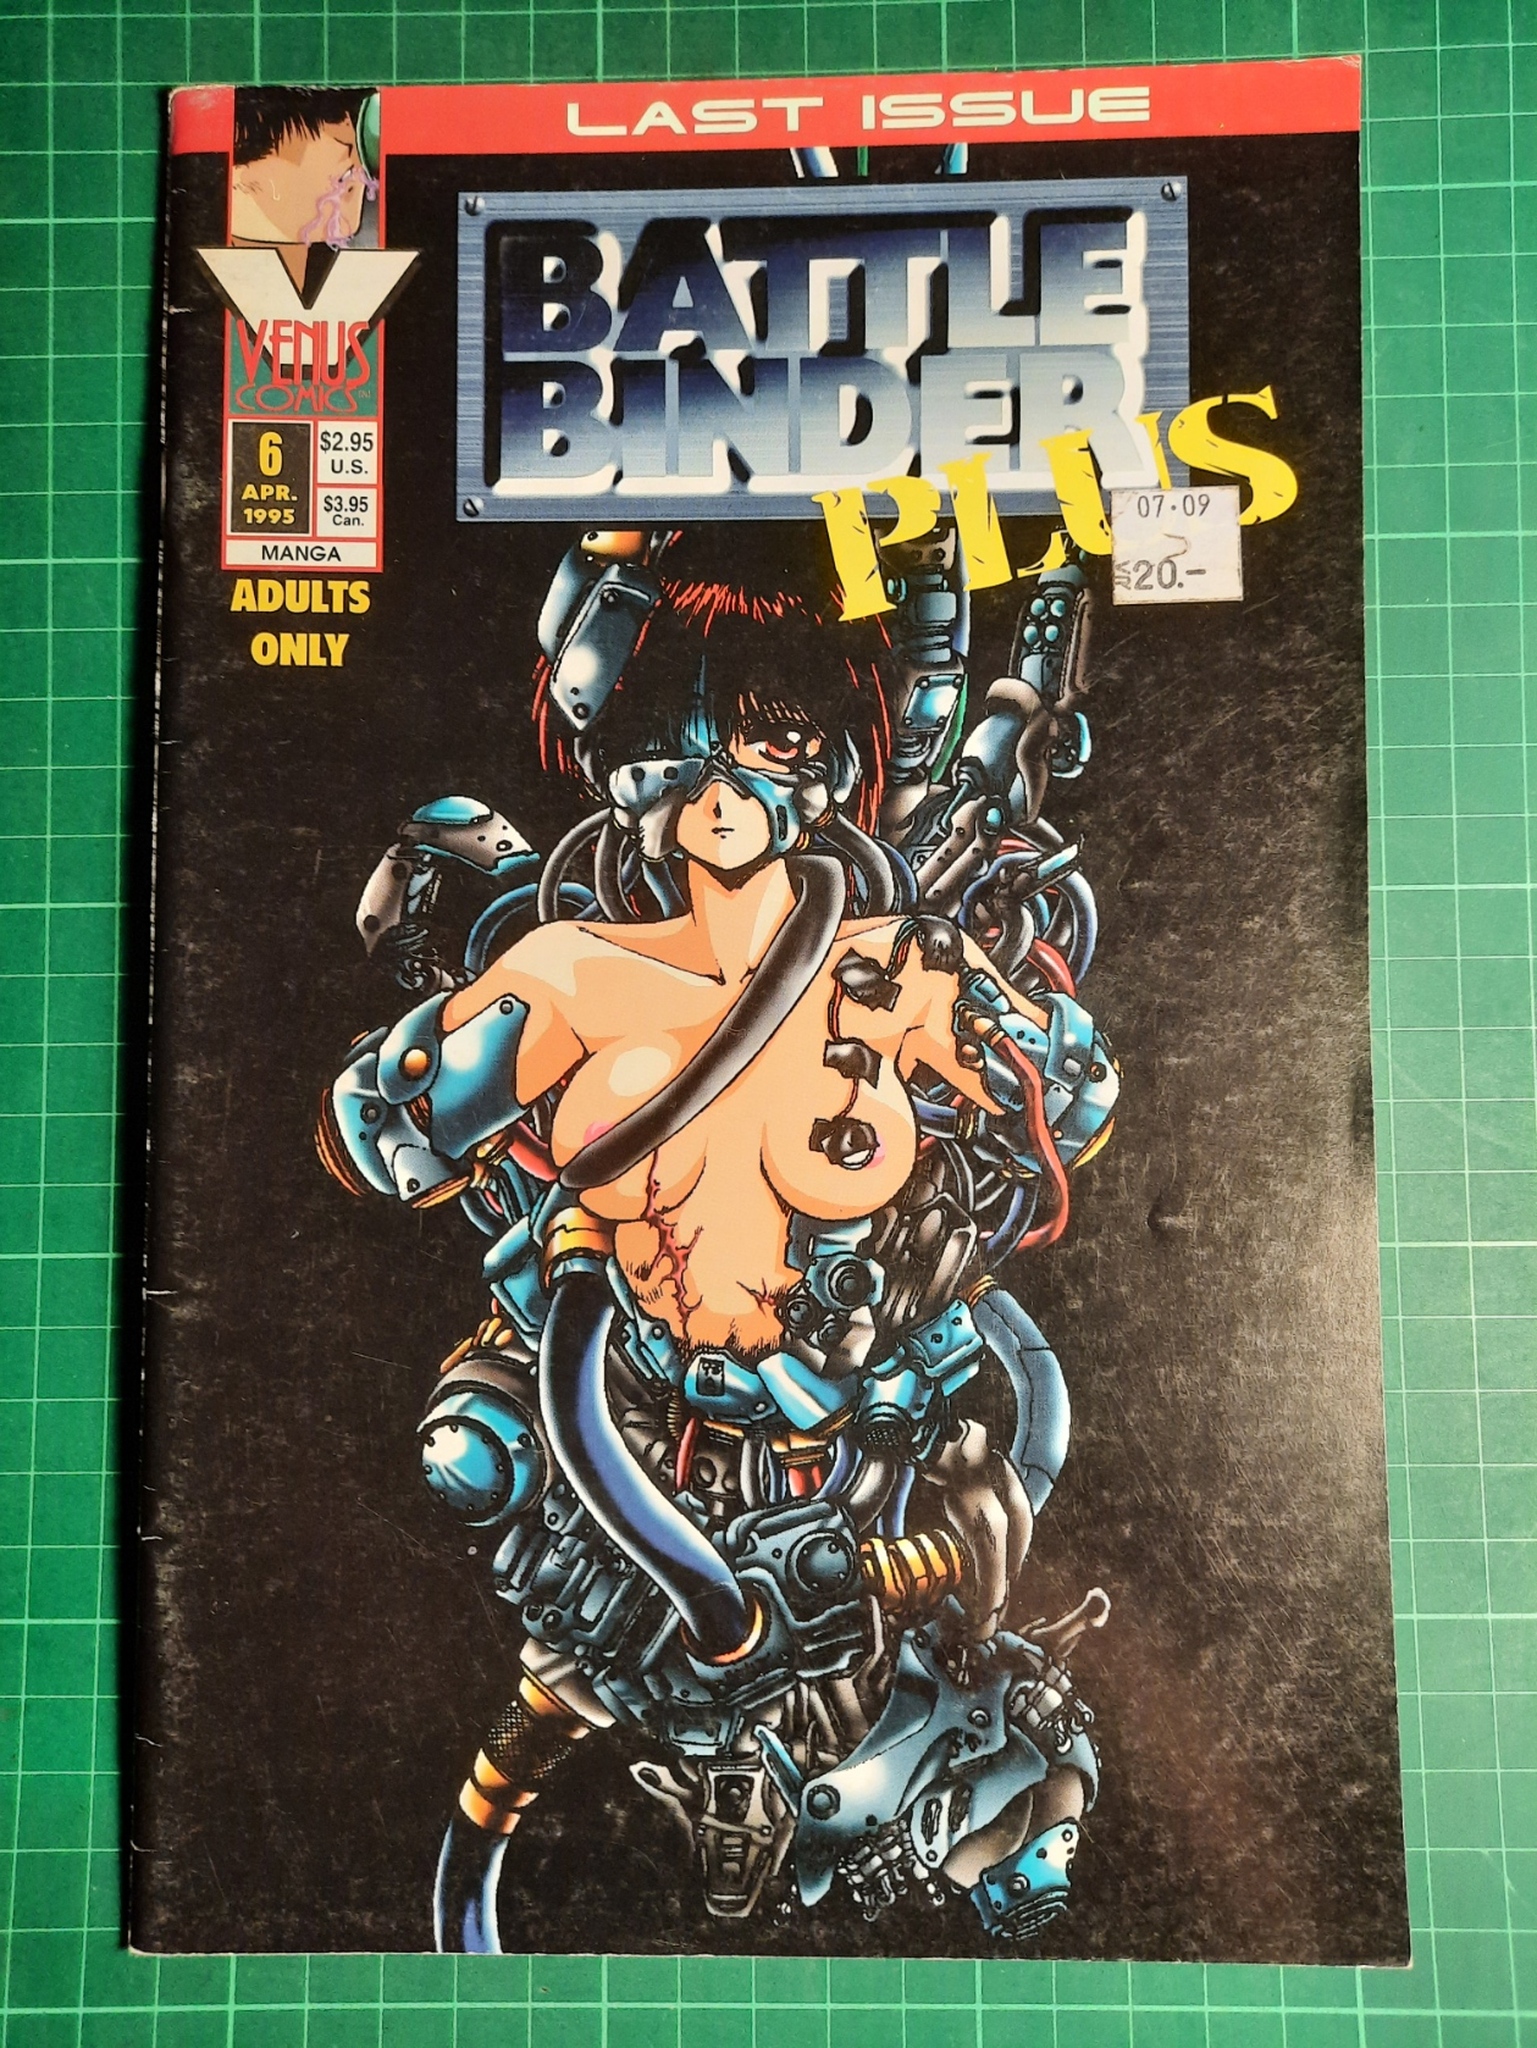 Battle binder plus #6 (Engelsk)